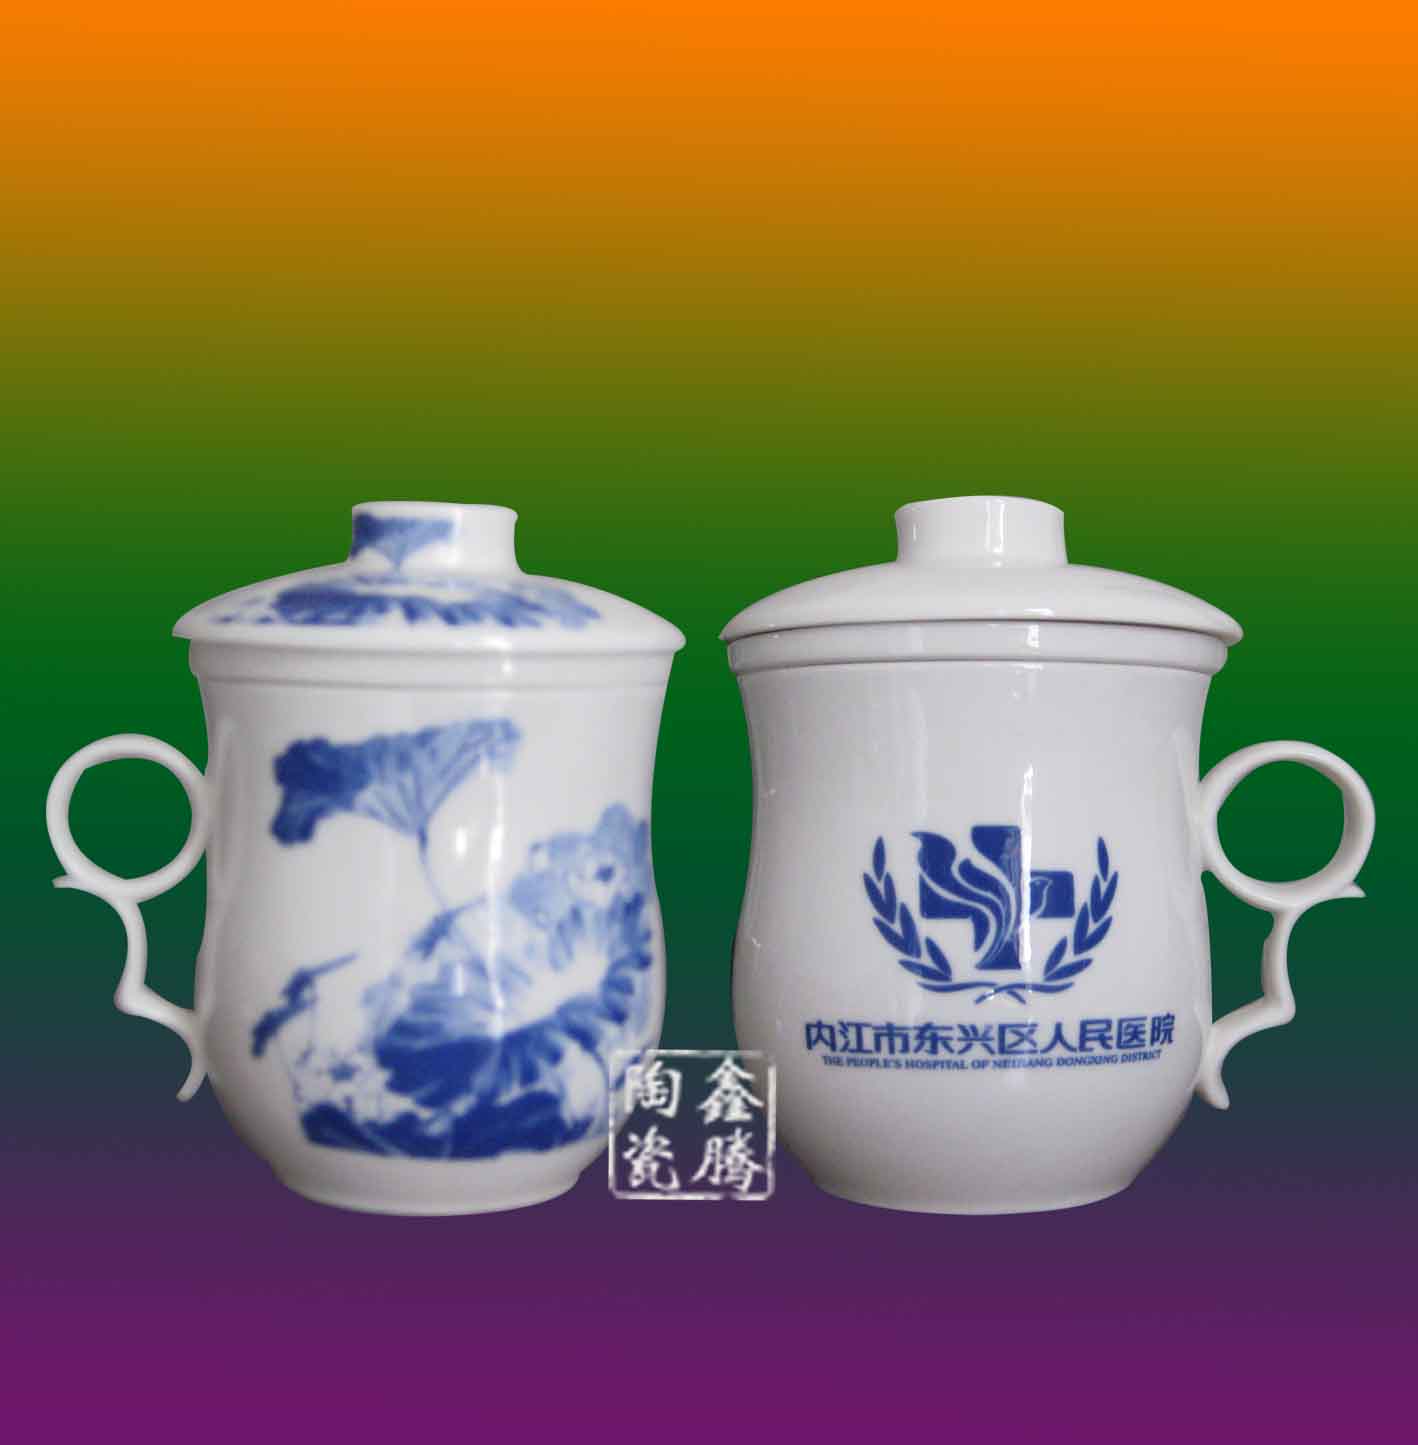 供应定做陶瓷茶杯、会议陶瓷茶杯、聚会用品陶瓷茶杯、